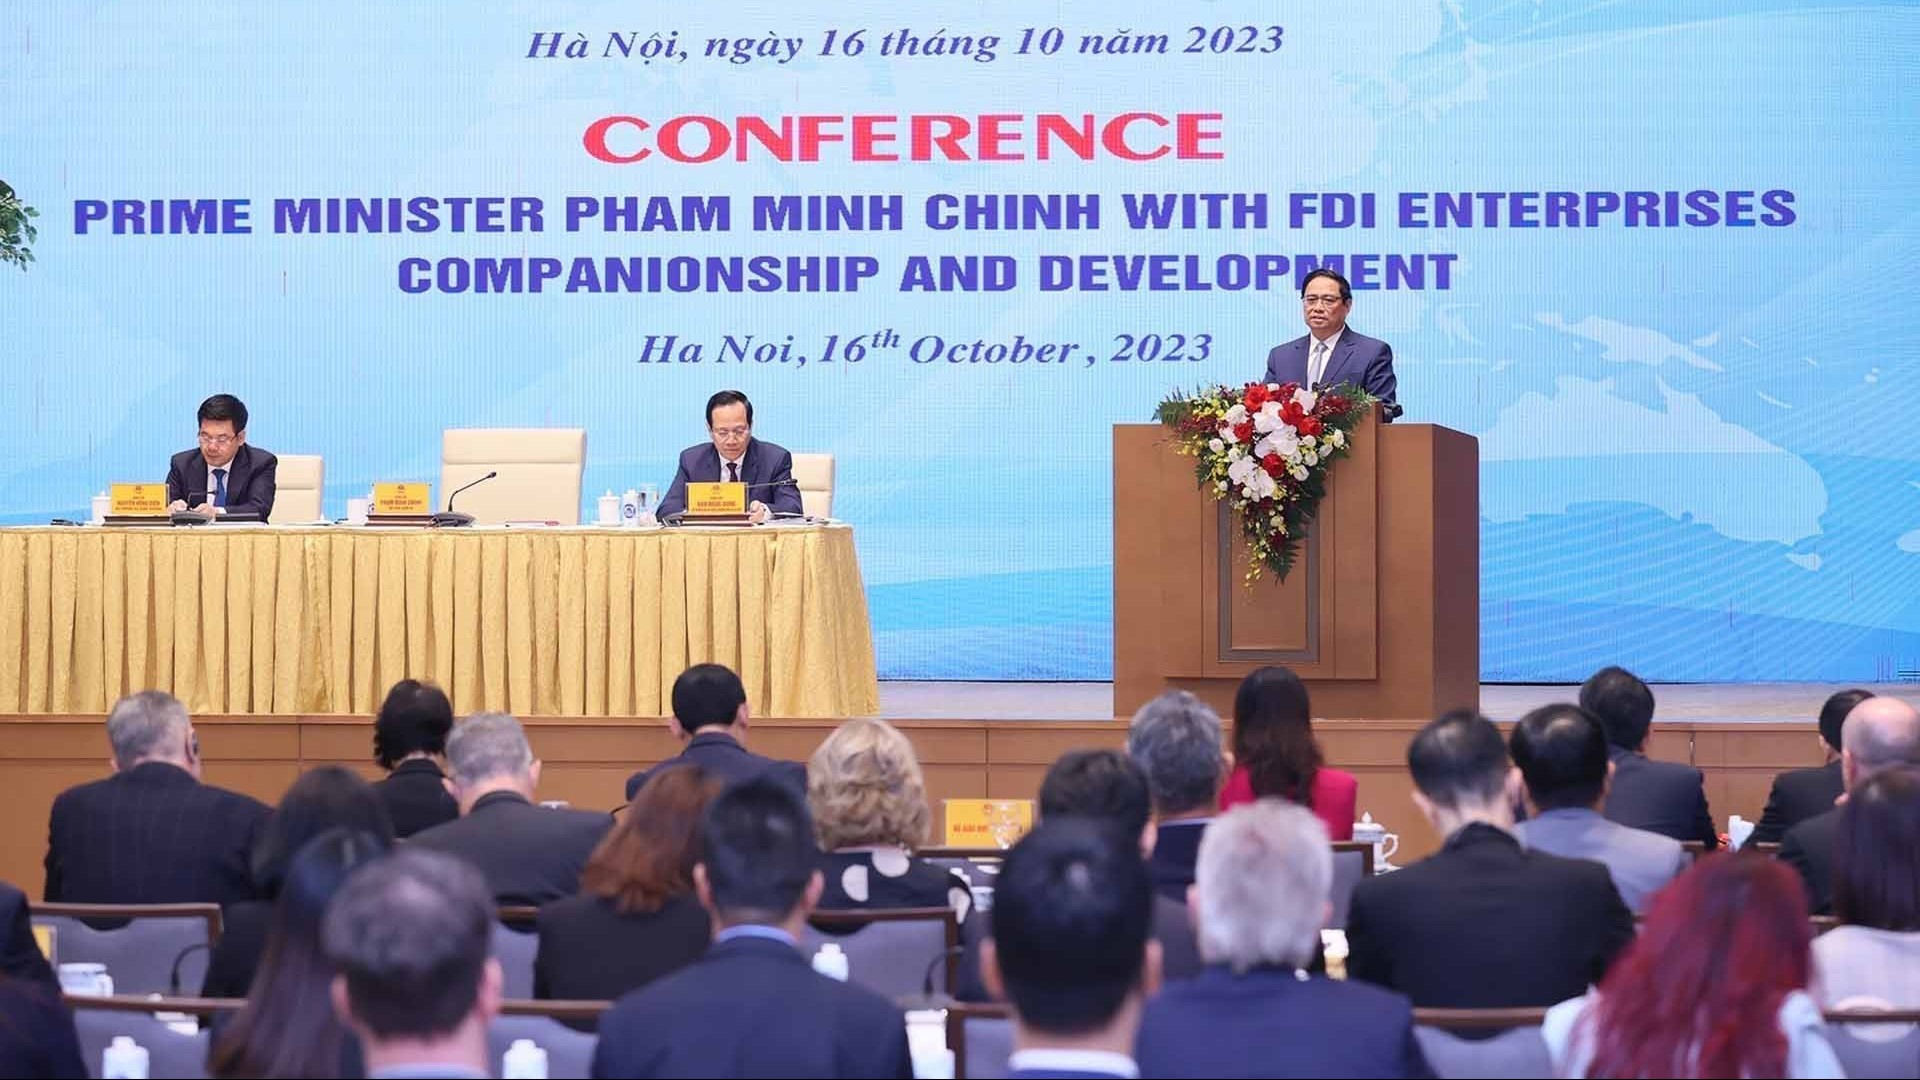 Thủ tướng Phạm Minh Chính: Xây dựng hệ sinh thái đầu tư kinh doanh lành mạnh, ổn định, bền vững